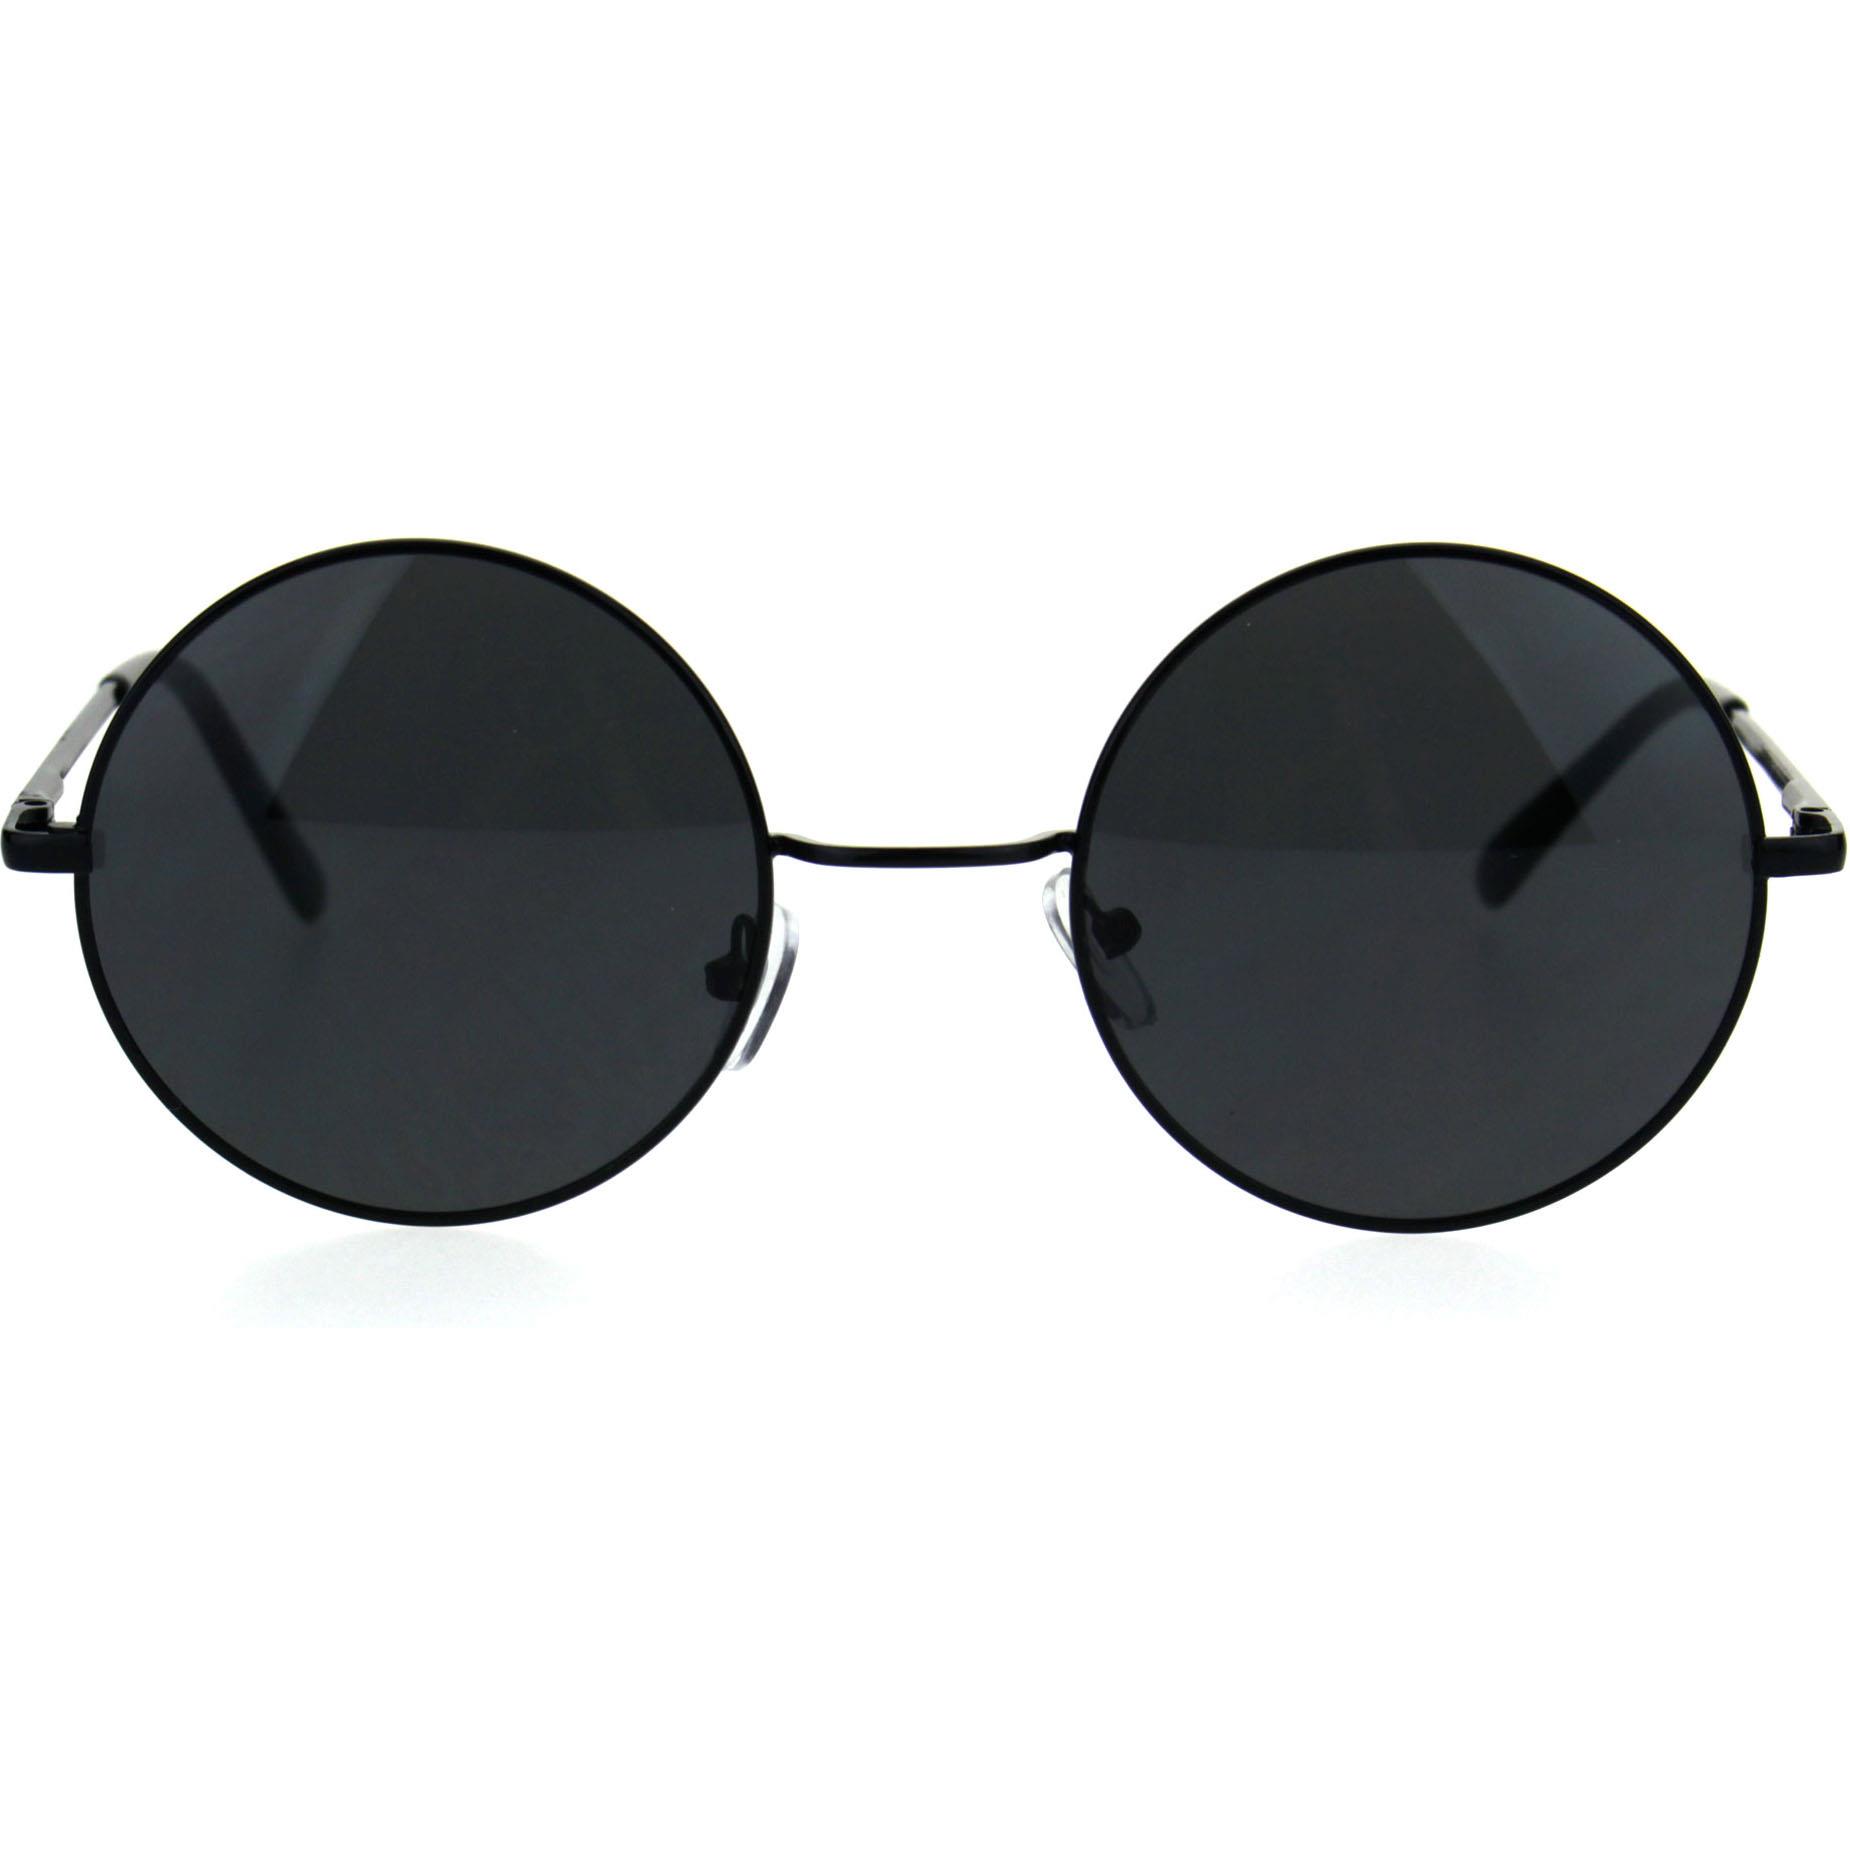 Extoll Yuvarlak Cam John Lennon Erkek Güneş Gözlüğü 6 Renk ex608 - Siyah